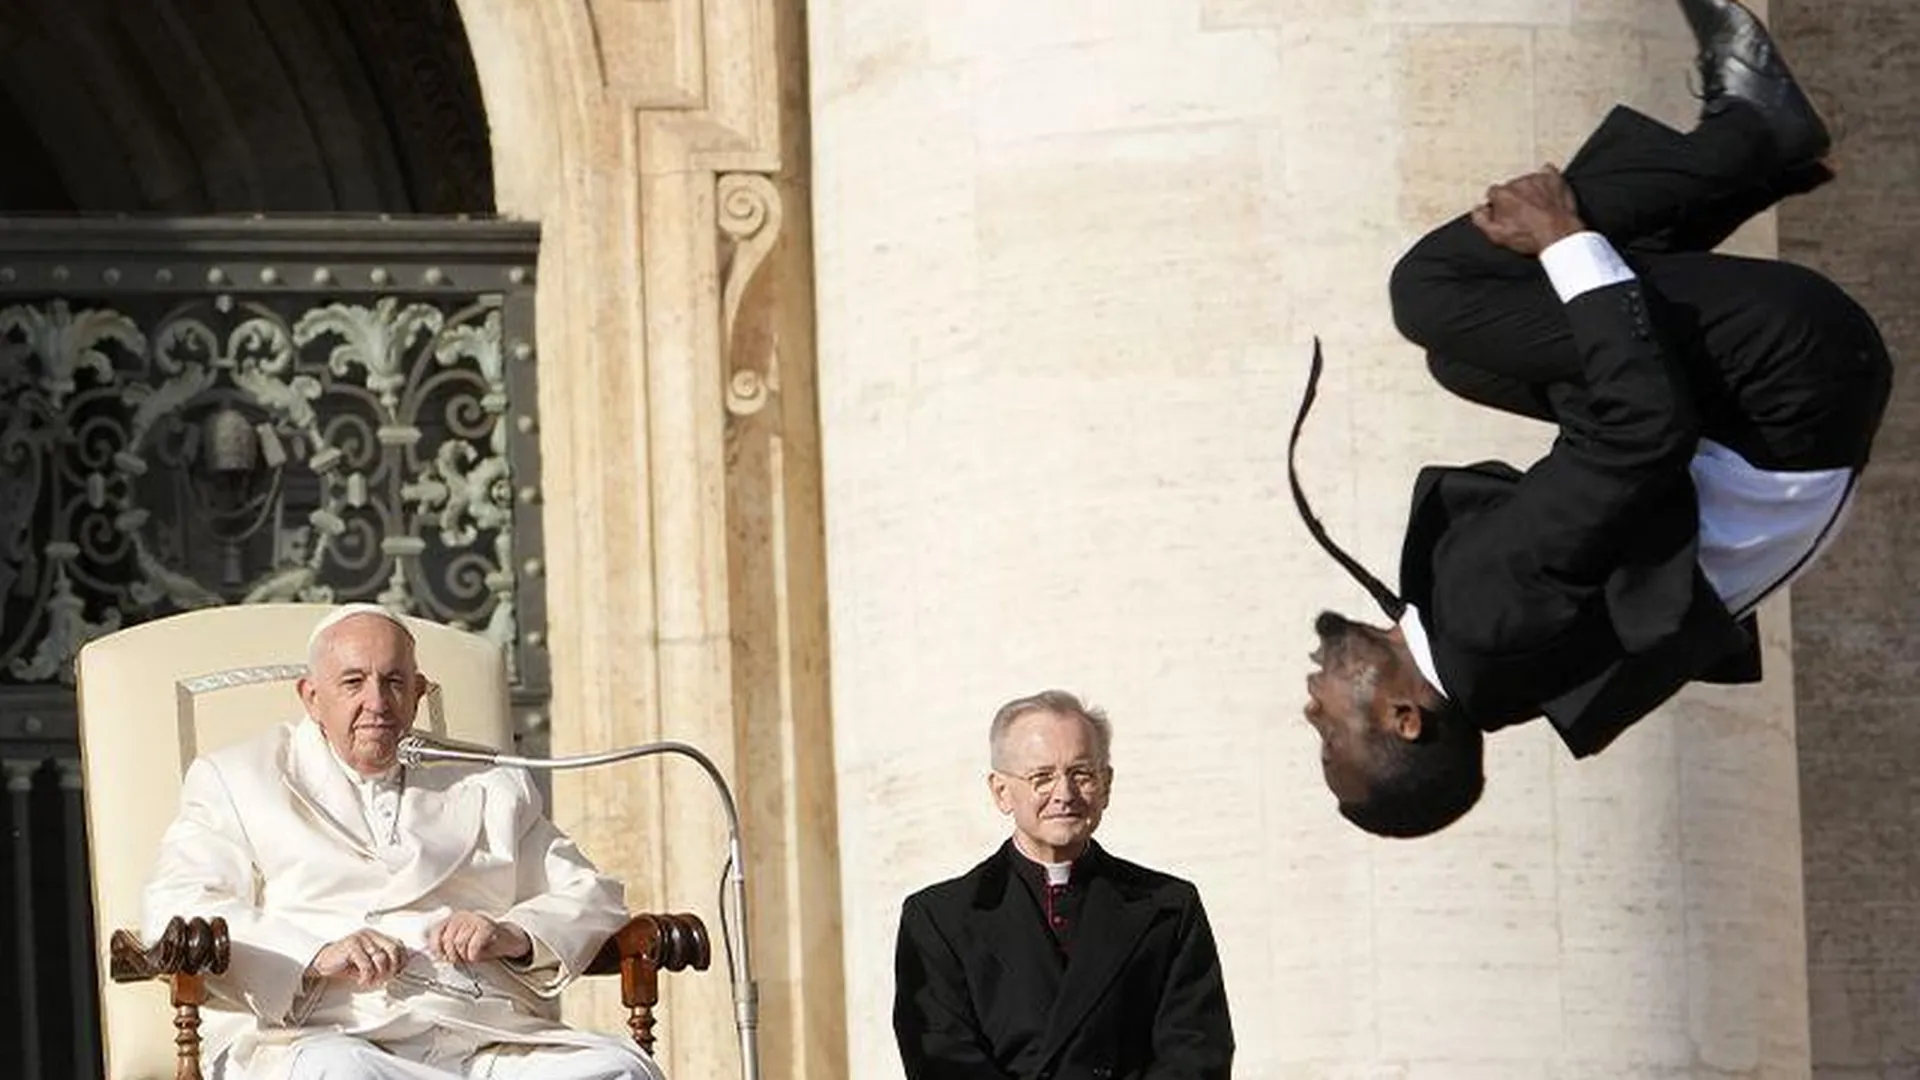 «Наверное, у Папы Римского так заведено»: священник высказался об африканских циркачах в Ватикане